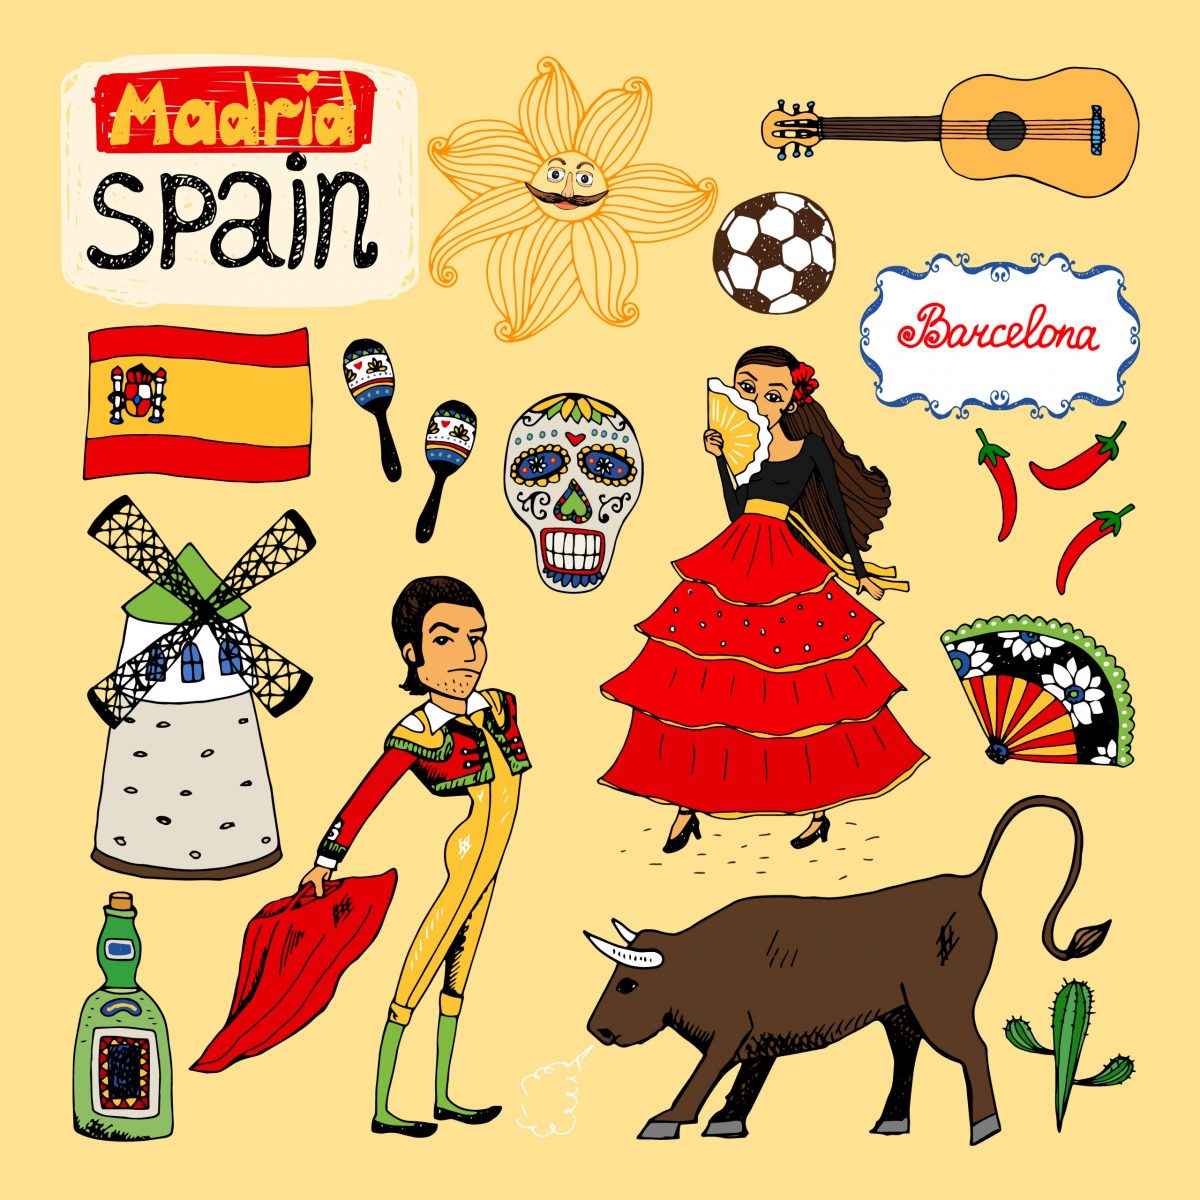 Aprenda Espanhol Sem Mestre - Curso Prático De Línguas